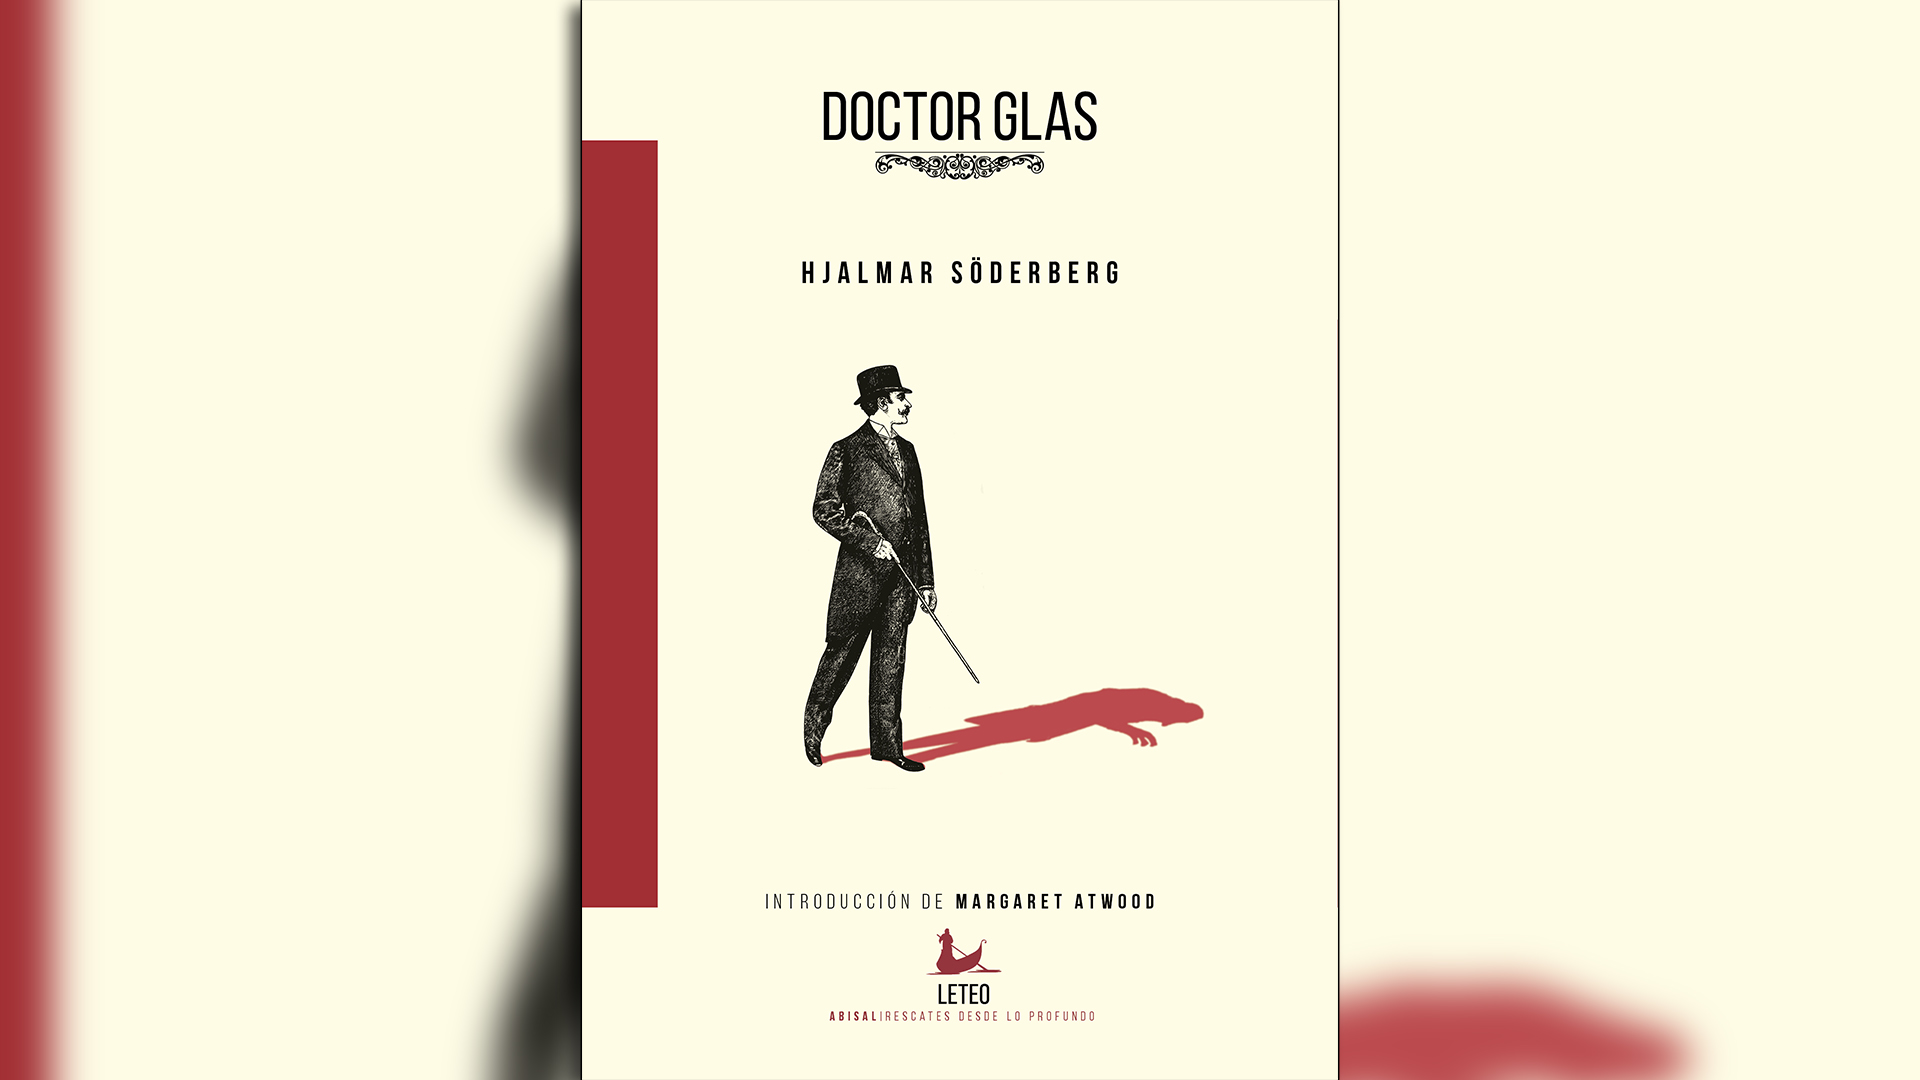 Portada de "Doctor Glas", de Hjalmar Söderberg, editado por Leteo.